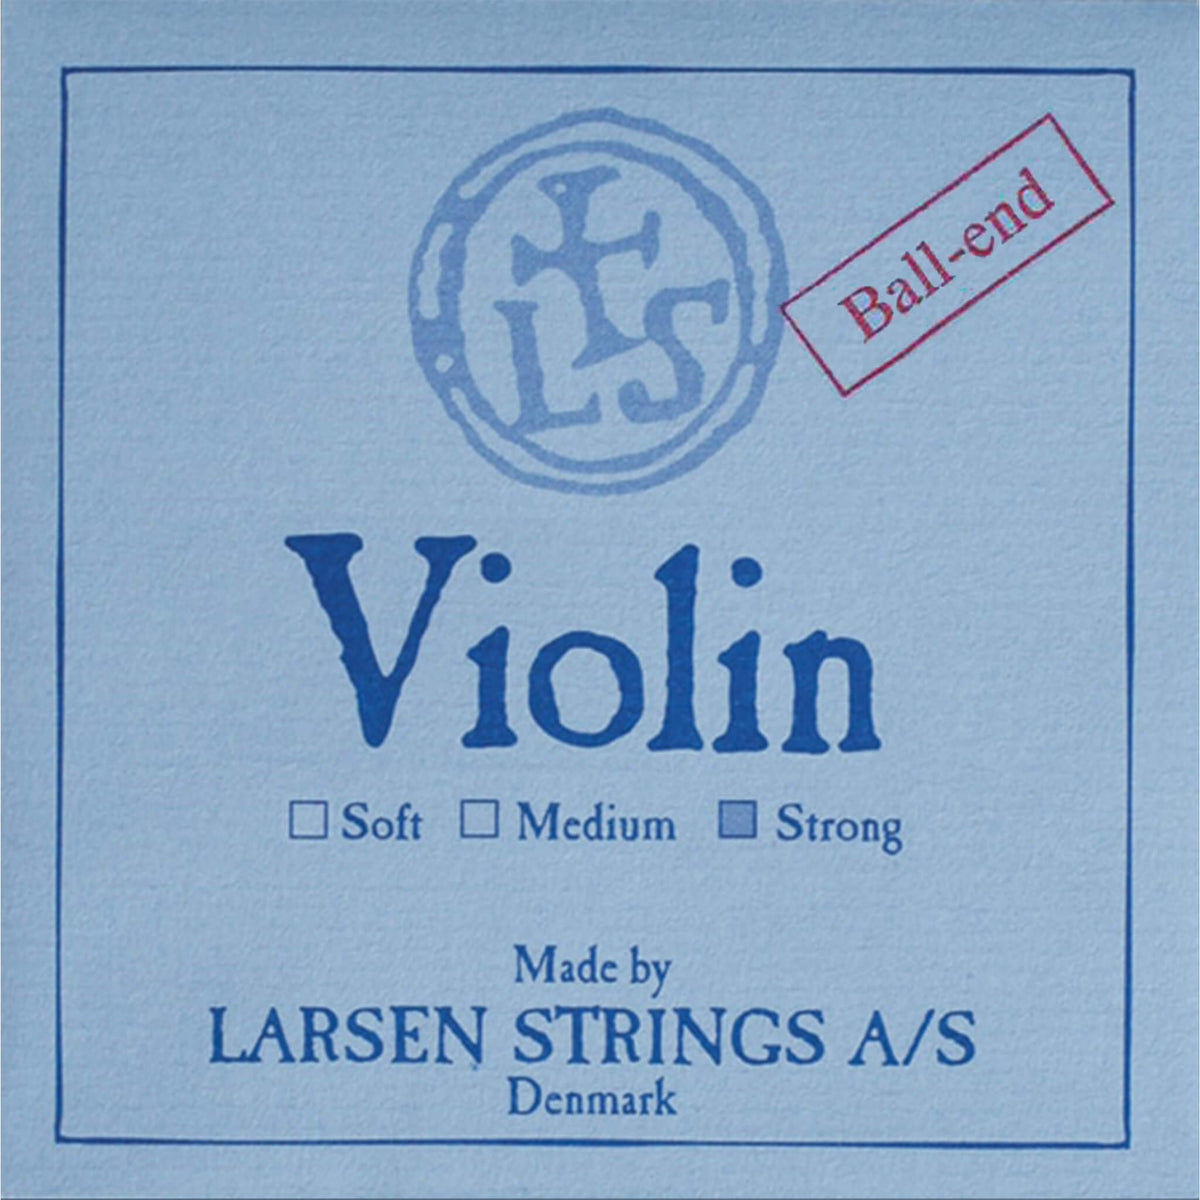 D'Addario Pro-Arté Violin String Set